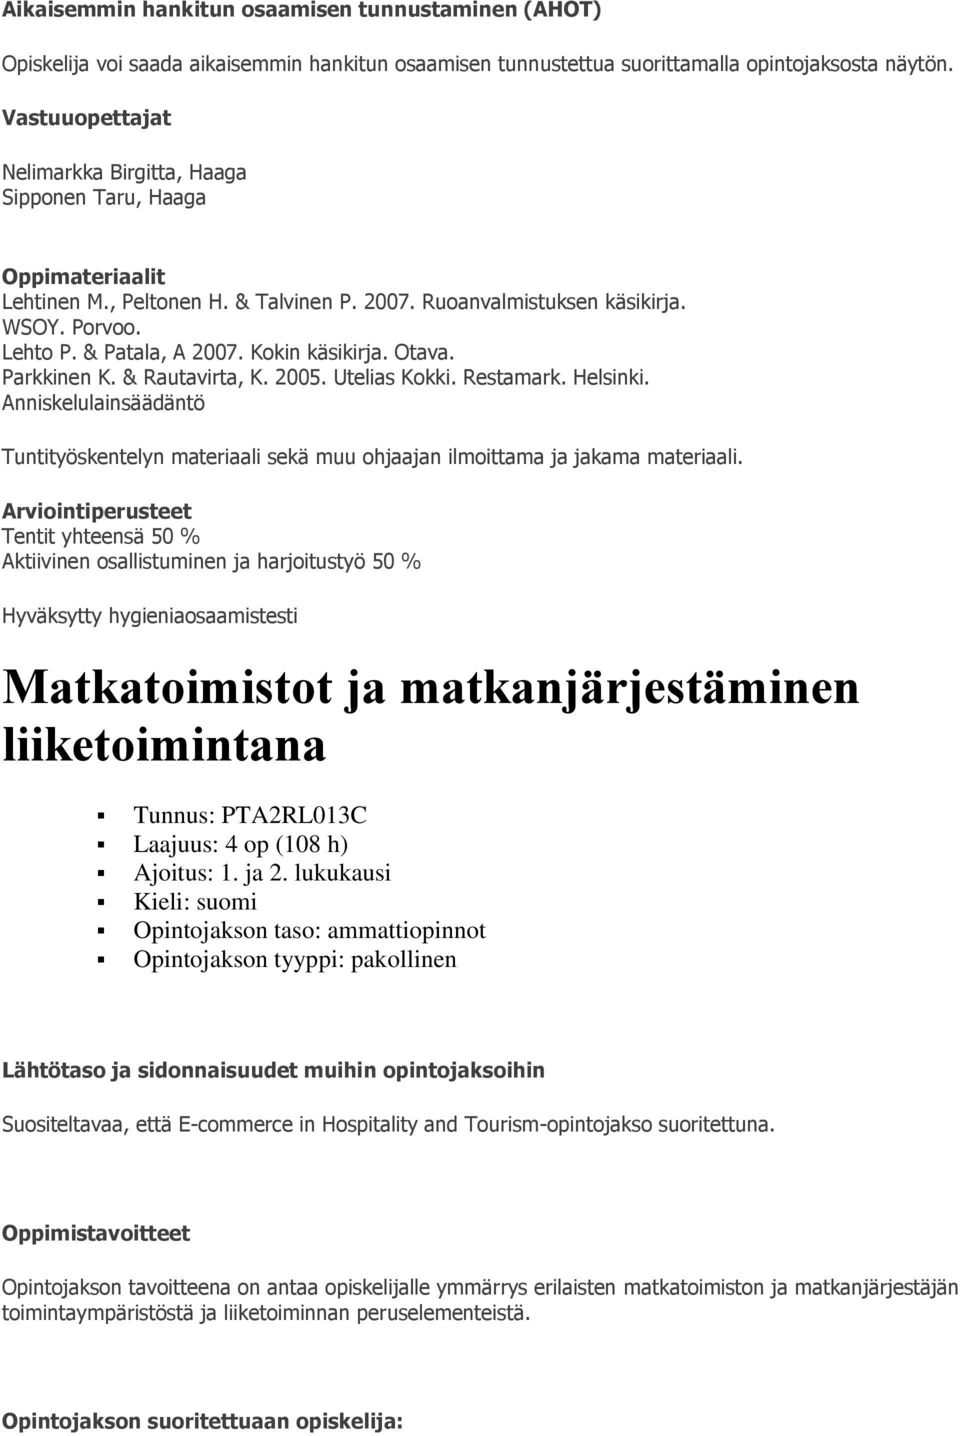 Otava. Parkkinen K. & Rautavirta, K. 2005. Utelias Kokki. Restamark. Helsinki. Anniskelulainsäädäntö Tuntityöskentelyn materiaali sekä muu ohjaajan ilmoittama ja jakama materiaali.